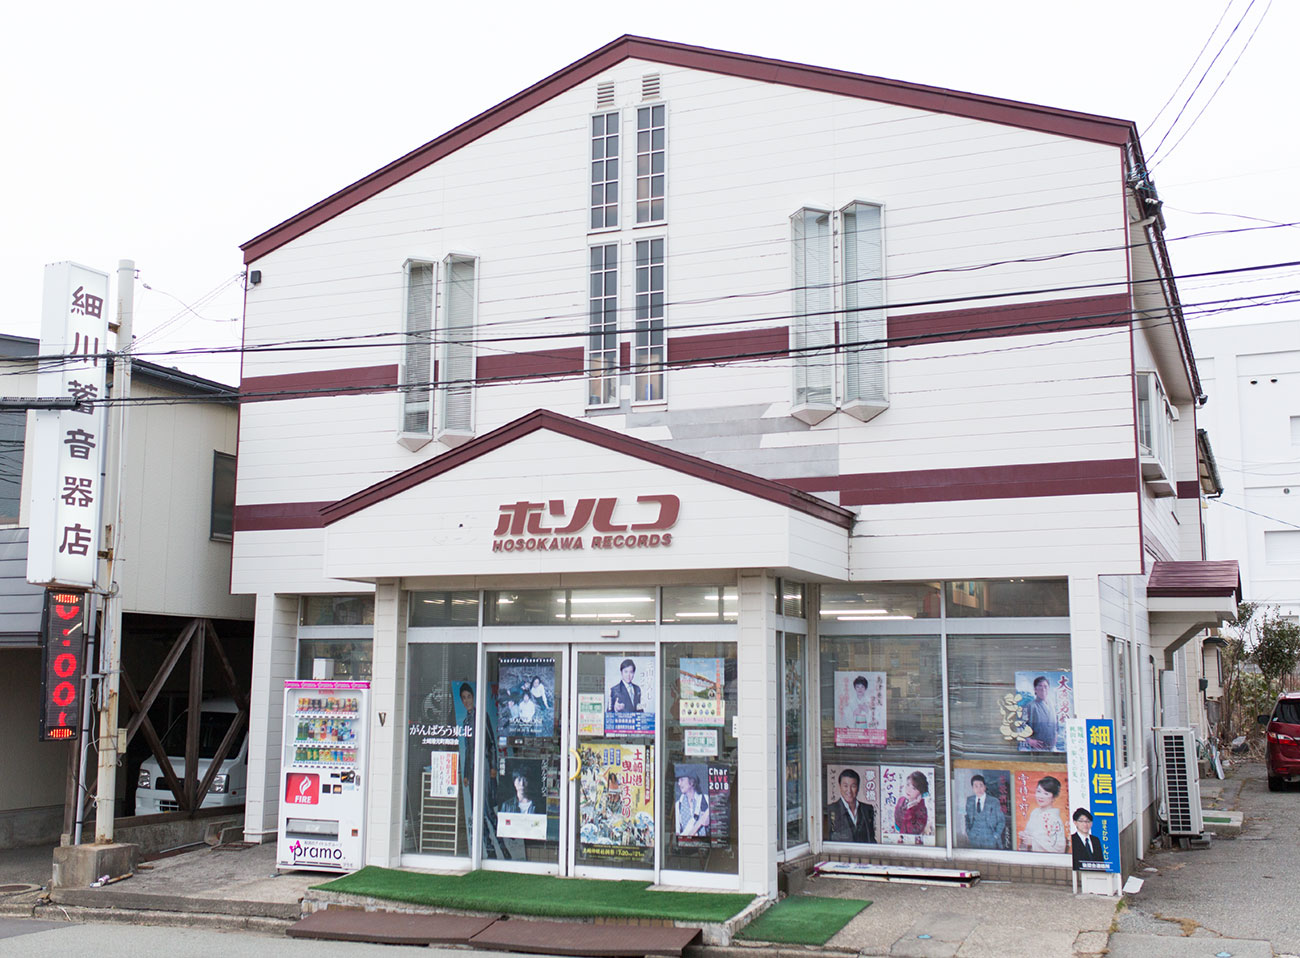 まさにノーミュージックノーライフ ホソレコで音楽再発見 細川レコード店 秋田市土崎 なんも大学